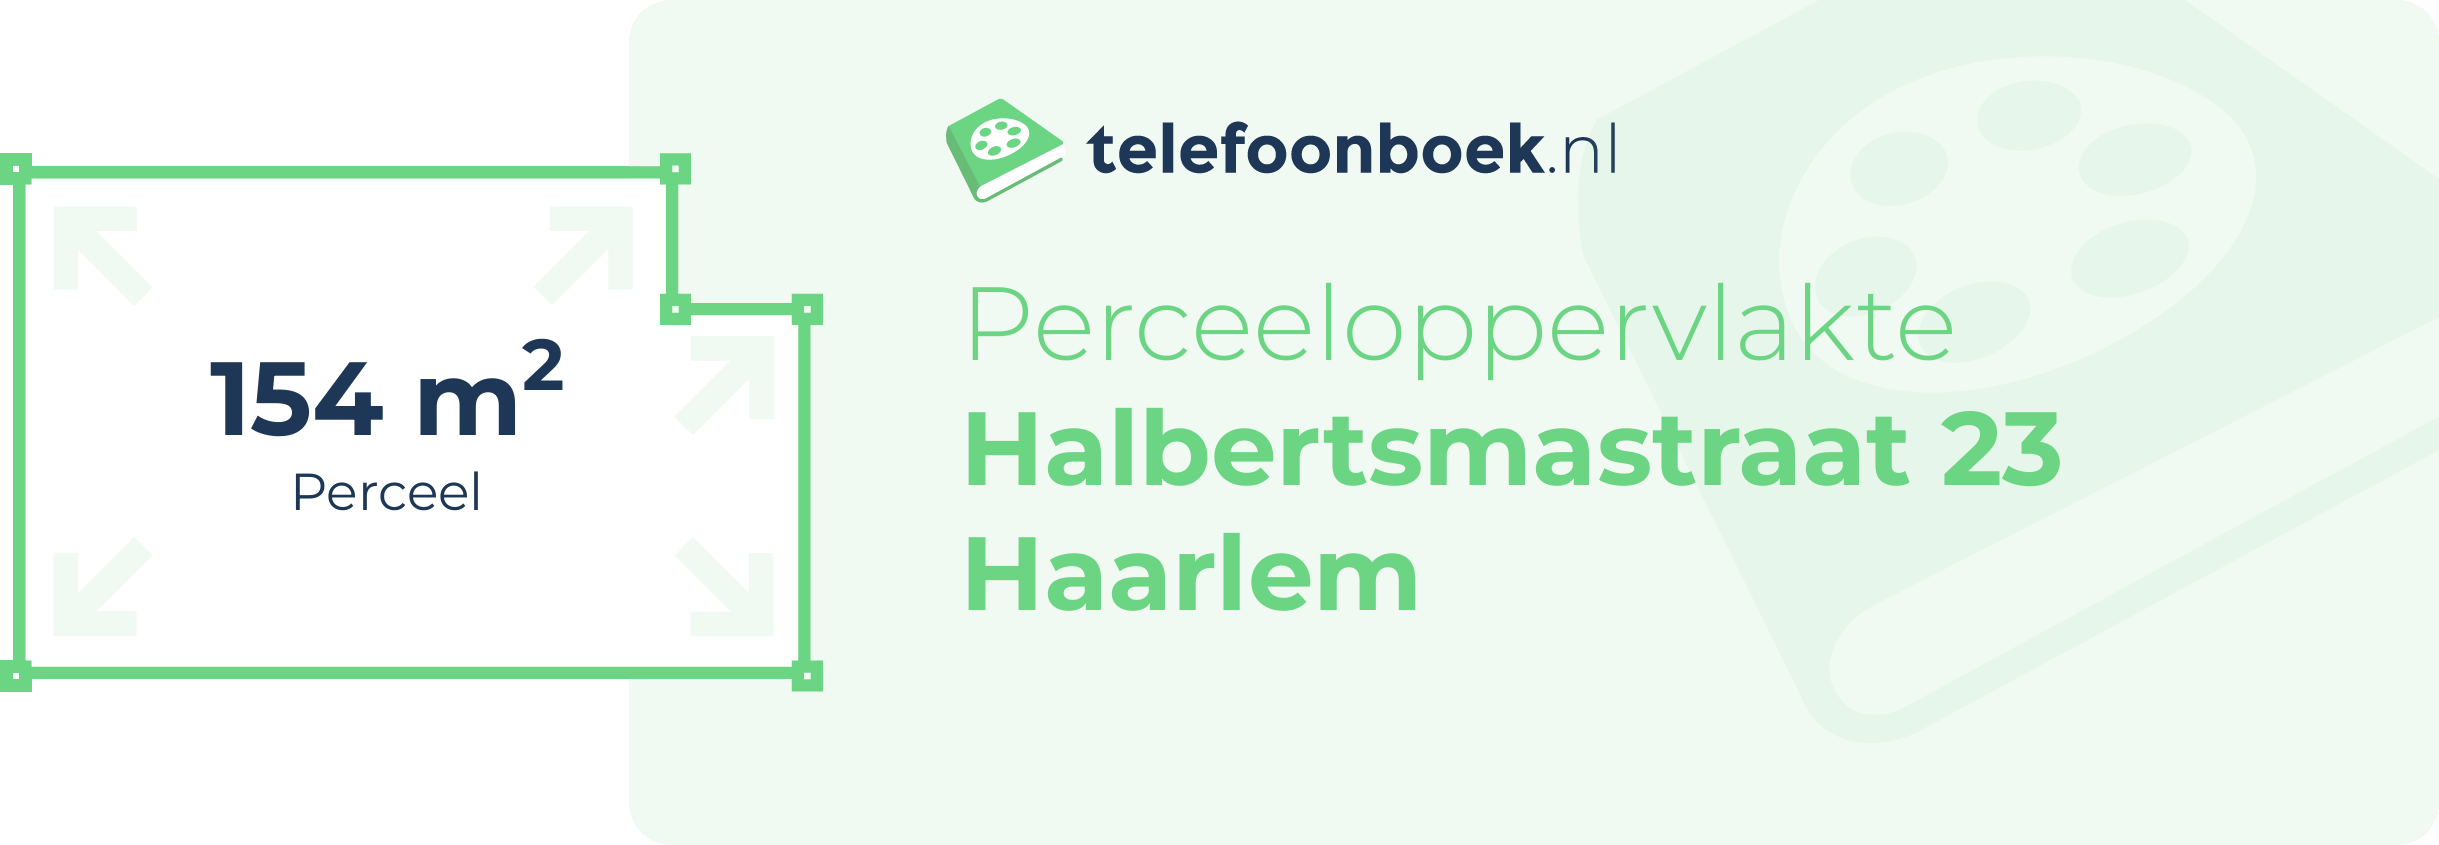 Perceeloppervlakte Halbertsmastraat 23 Haarlem